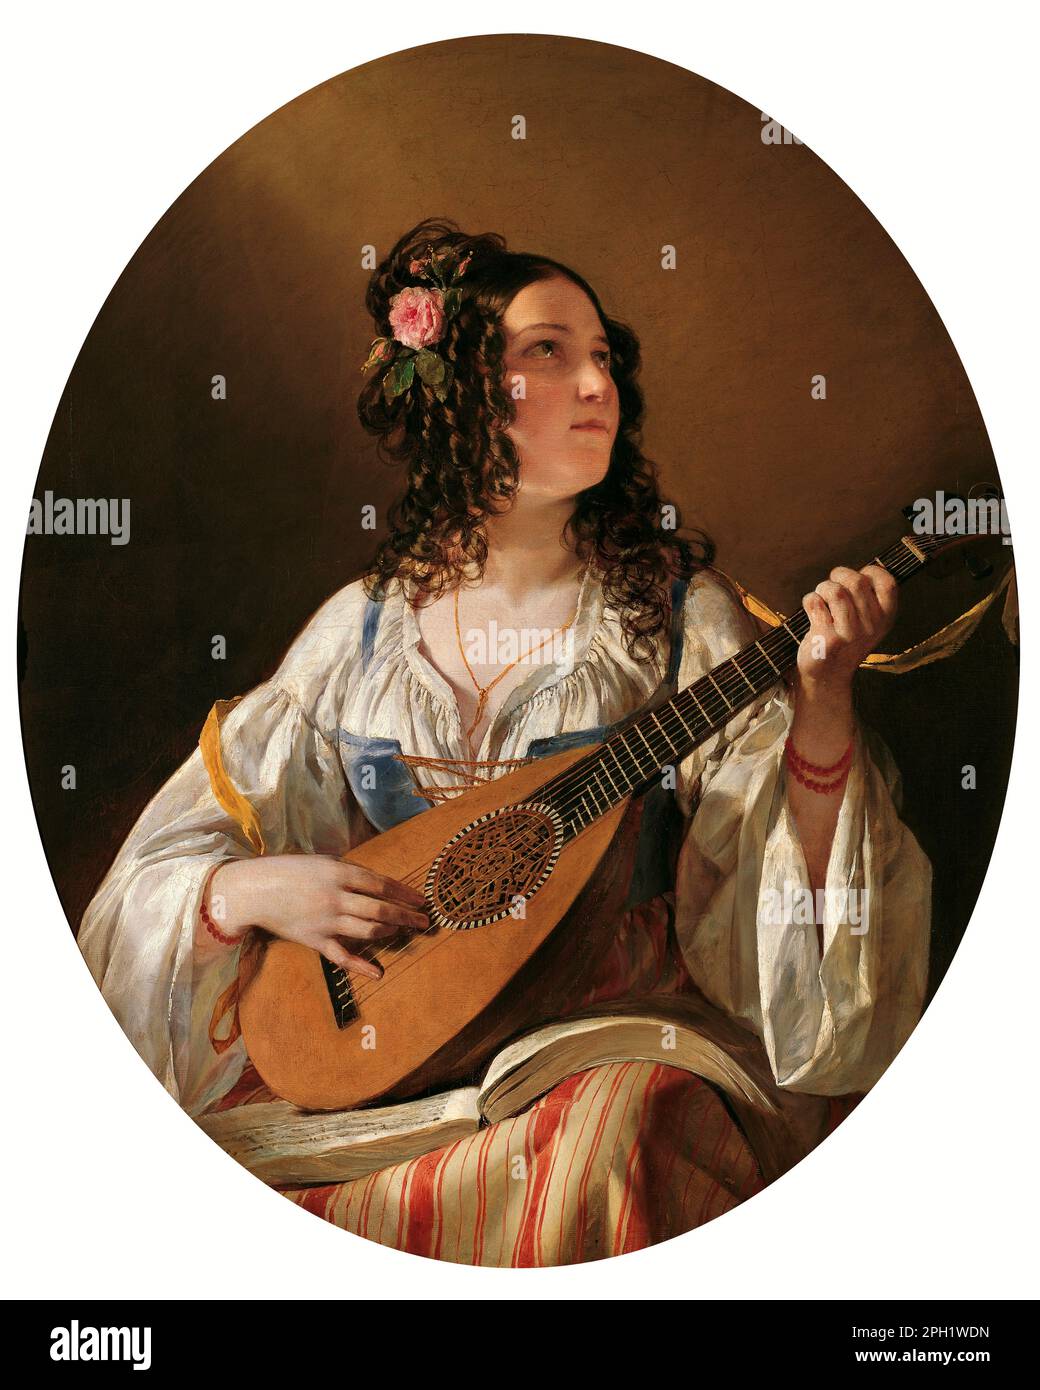 Lute Player vom österreichisch-ungarischen Porträtmaler Friedrich von Amerling (1803-1887), Öl auf Leinwand, 1838 Stockfoto